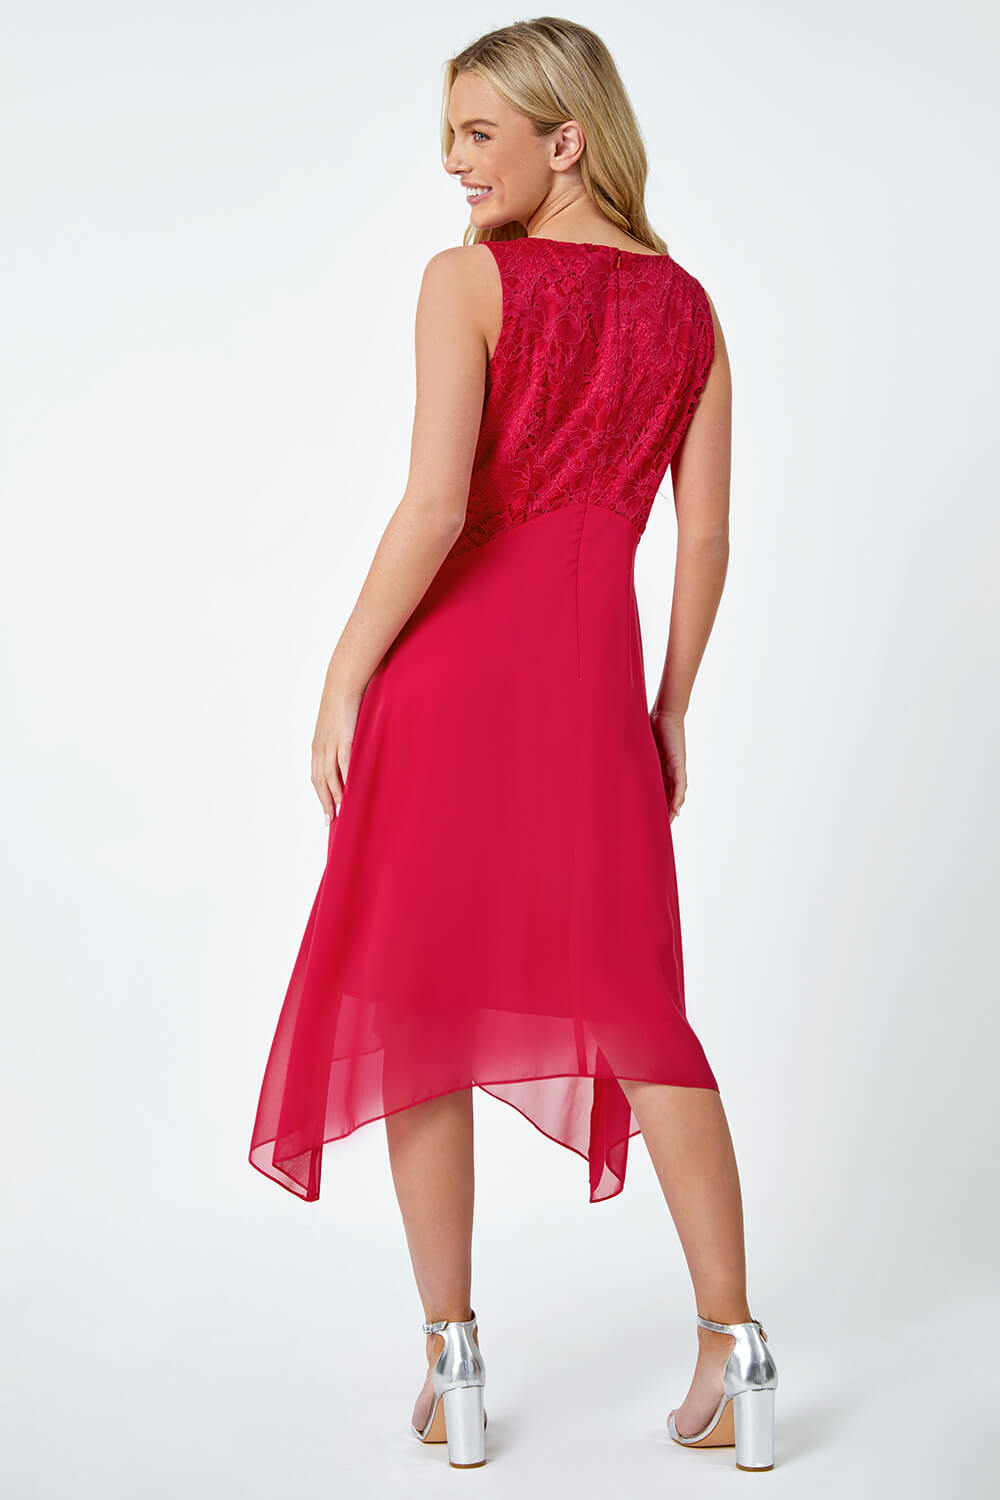 CERISE Petite Lace Bodice Dress , Image 3 of 5